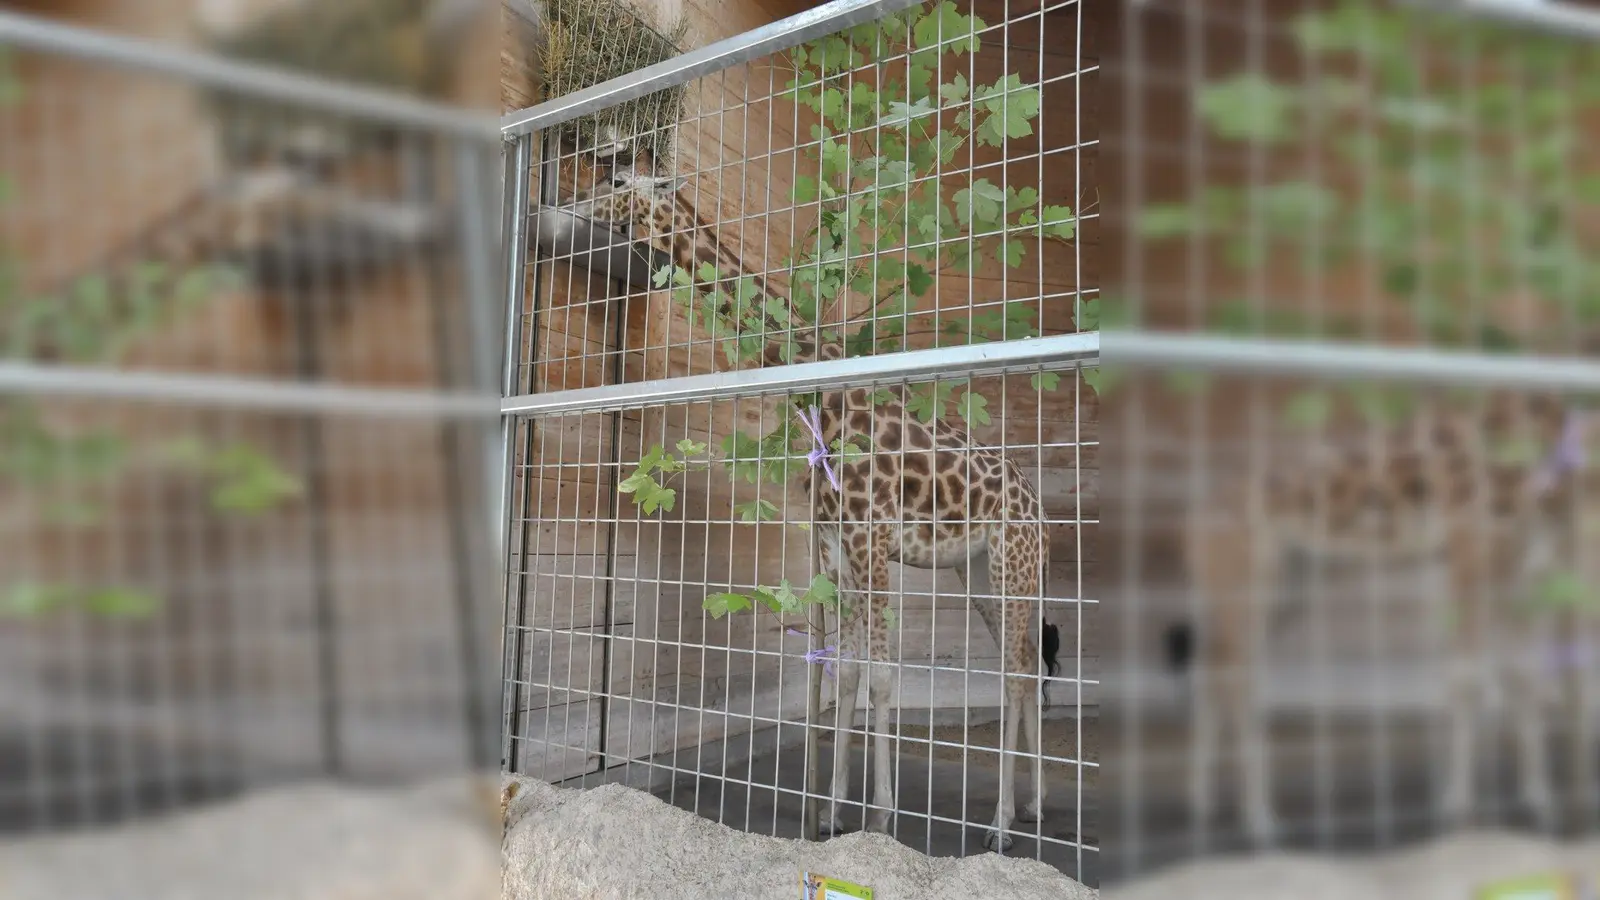 Die neuen Giraffen im Augsburger Zoo sind derzeit nicht den ganzen Tag zu sehen, und wenn, dann auch meist in den Boxen. Giraffendame Gaya (Bild) ist noch ängstlich, denn neben ihren beiden neuen Weggefährten kennt sie auch kein Gras, da der Außenbereich der Anlage des Pariser Zoos aus Kies bestand. Foto: Patrick Bruckner (Foto: Patrick Bruckner)